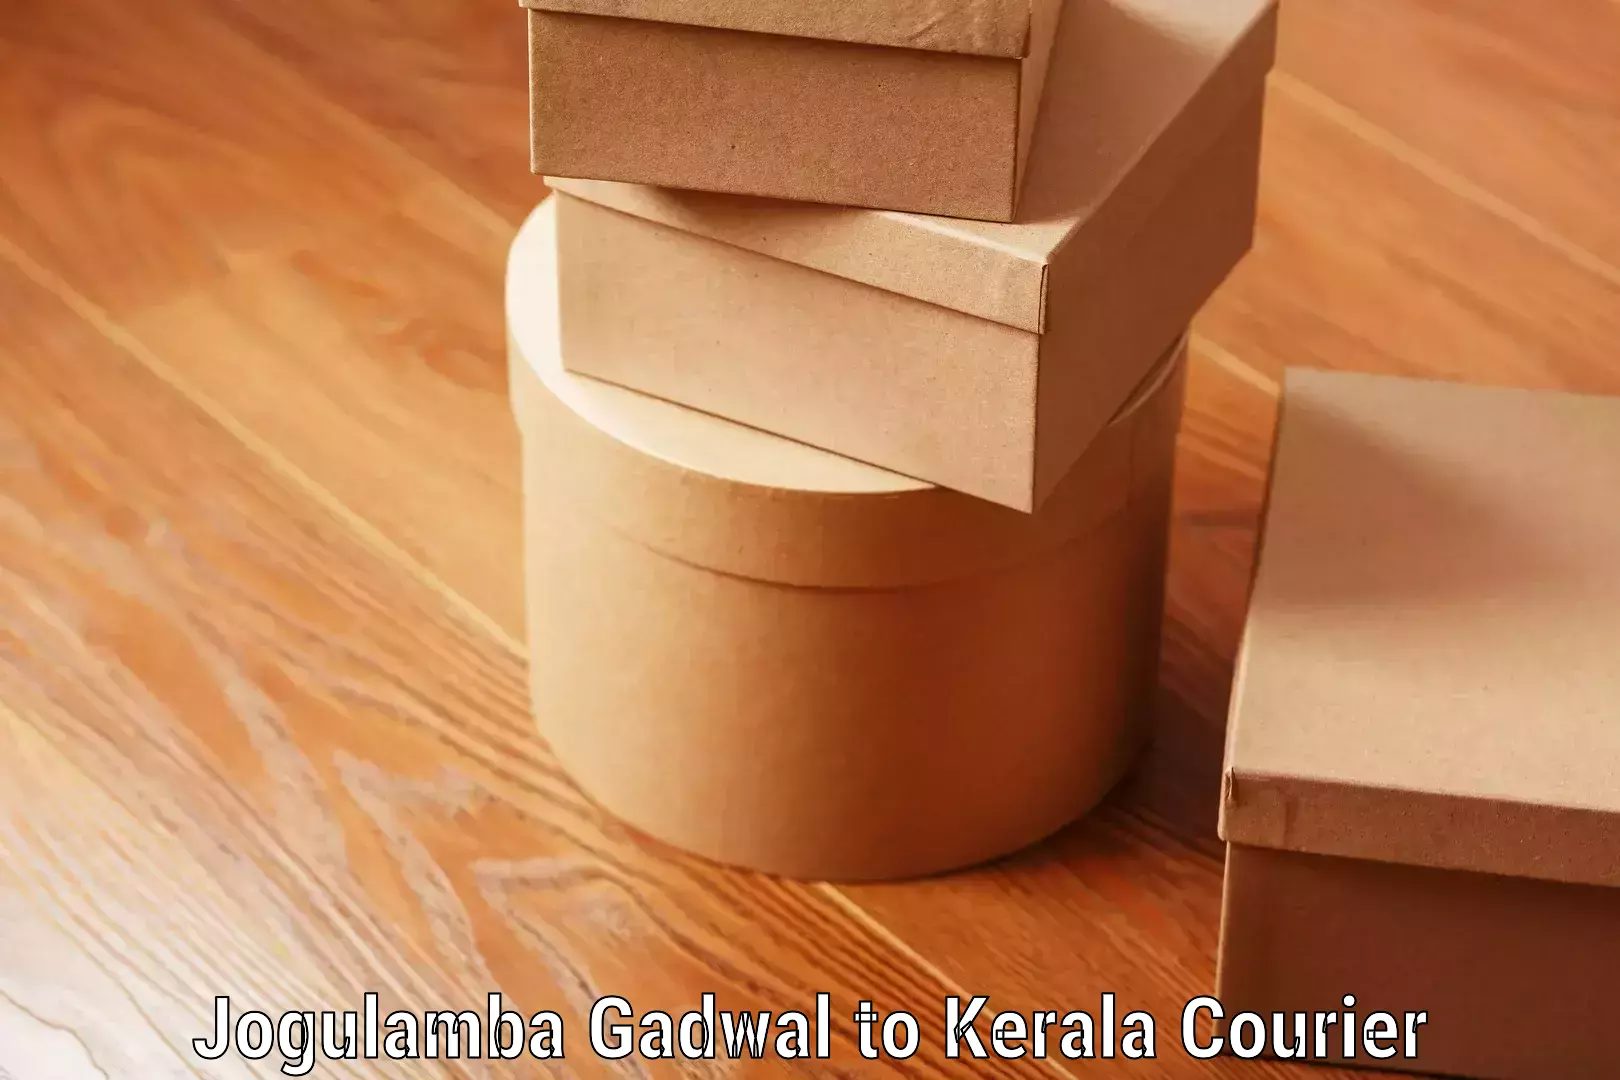 Luggage dispatch service Jogulamba Gadwal to Kerala